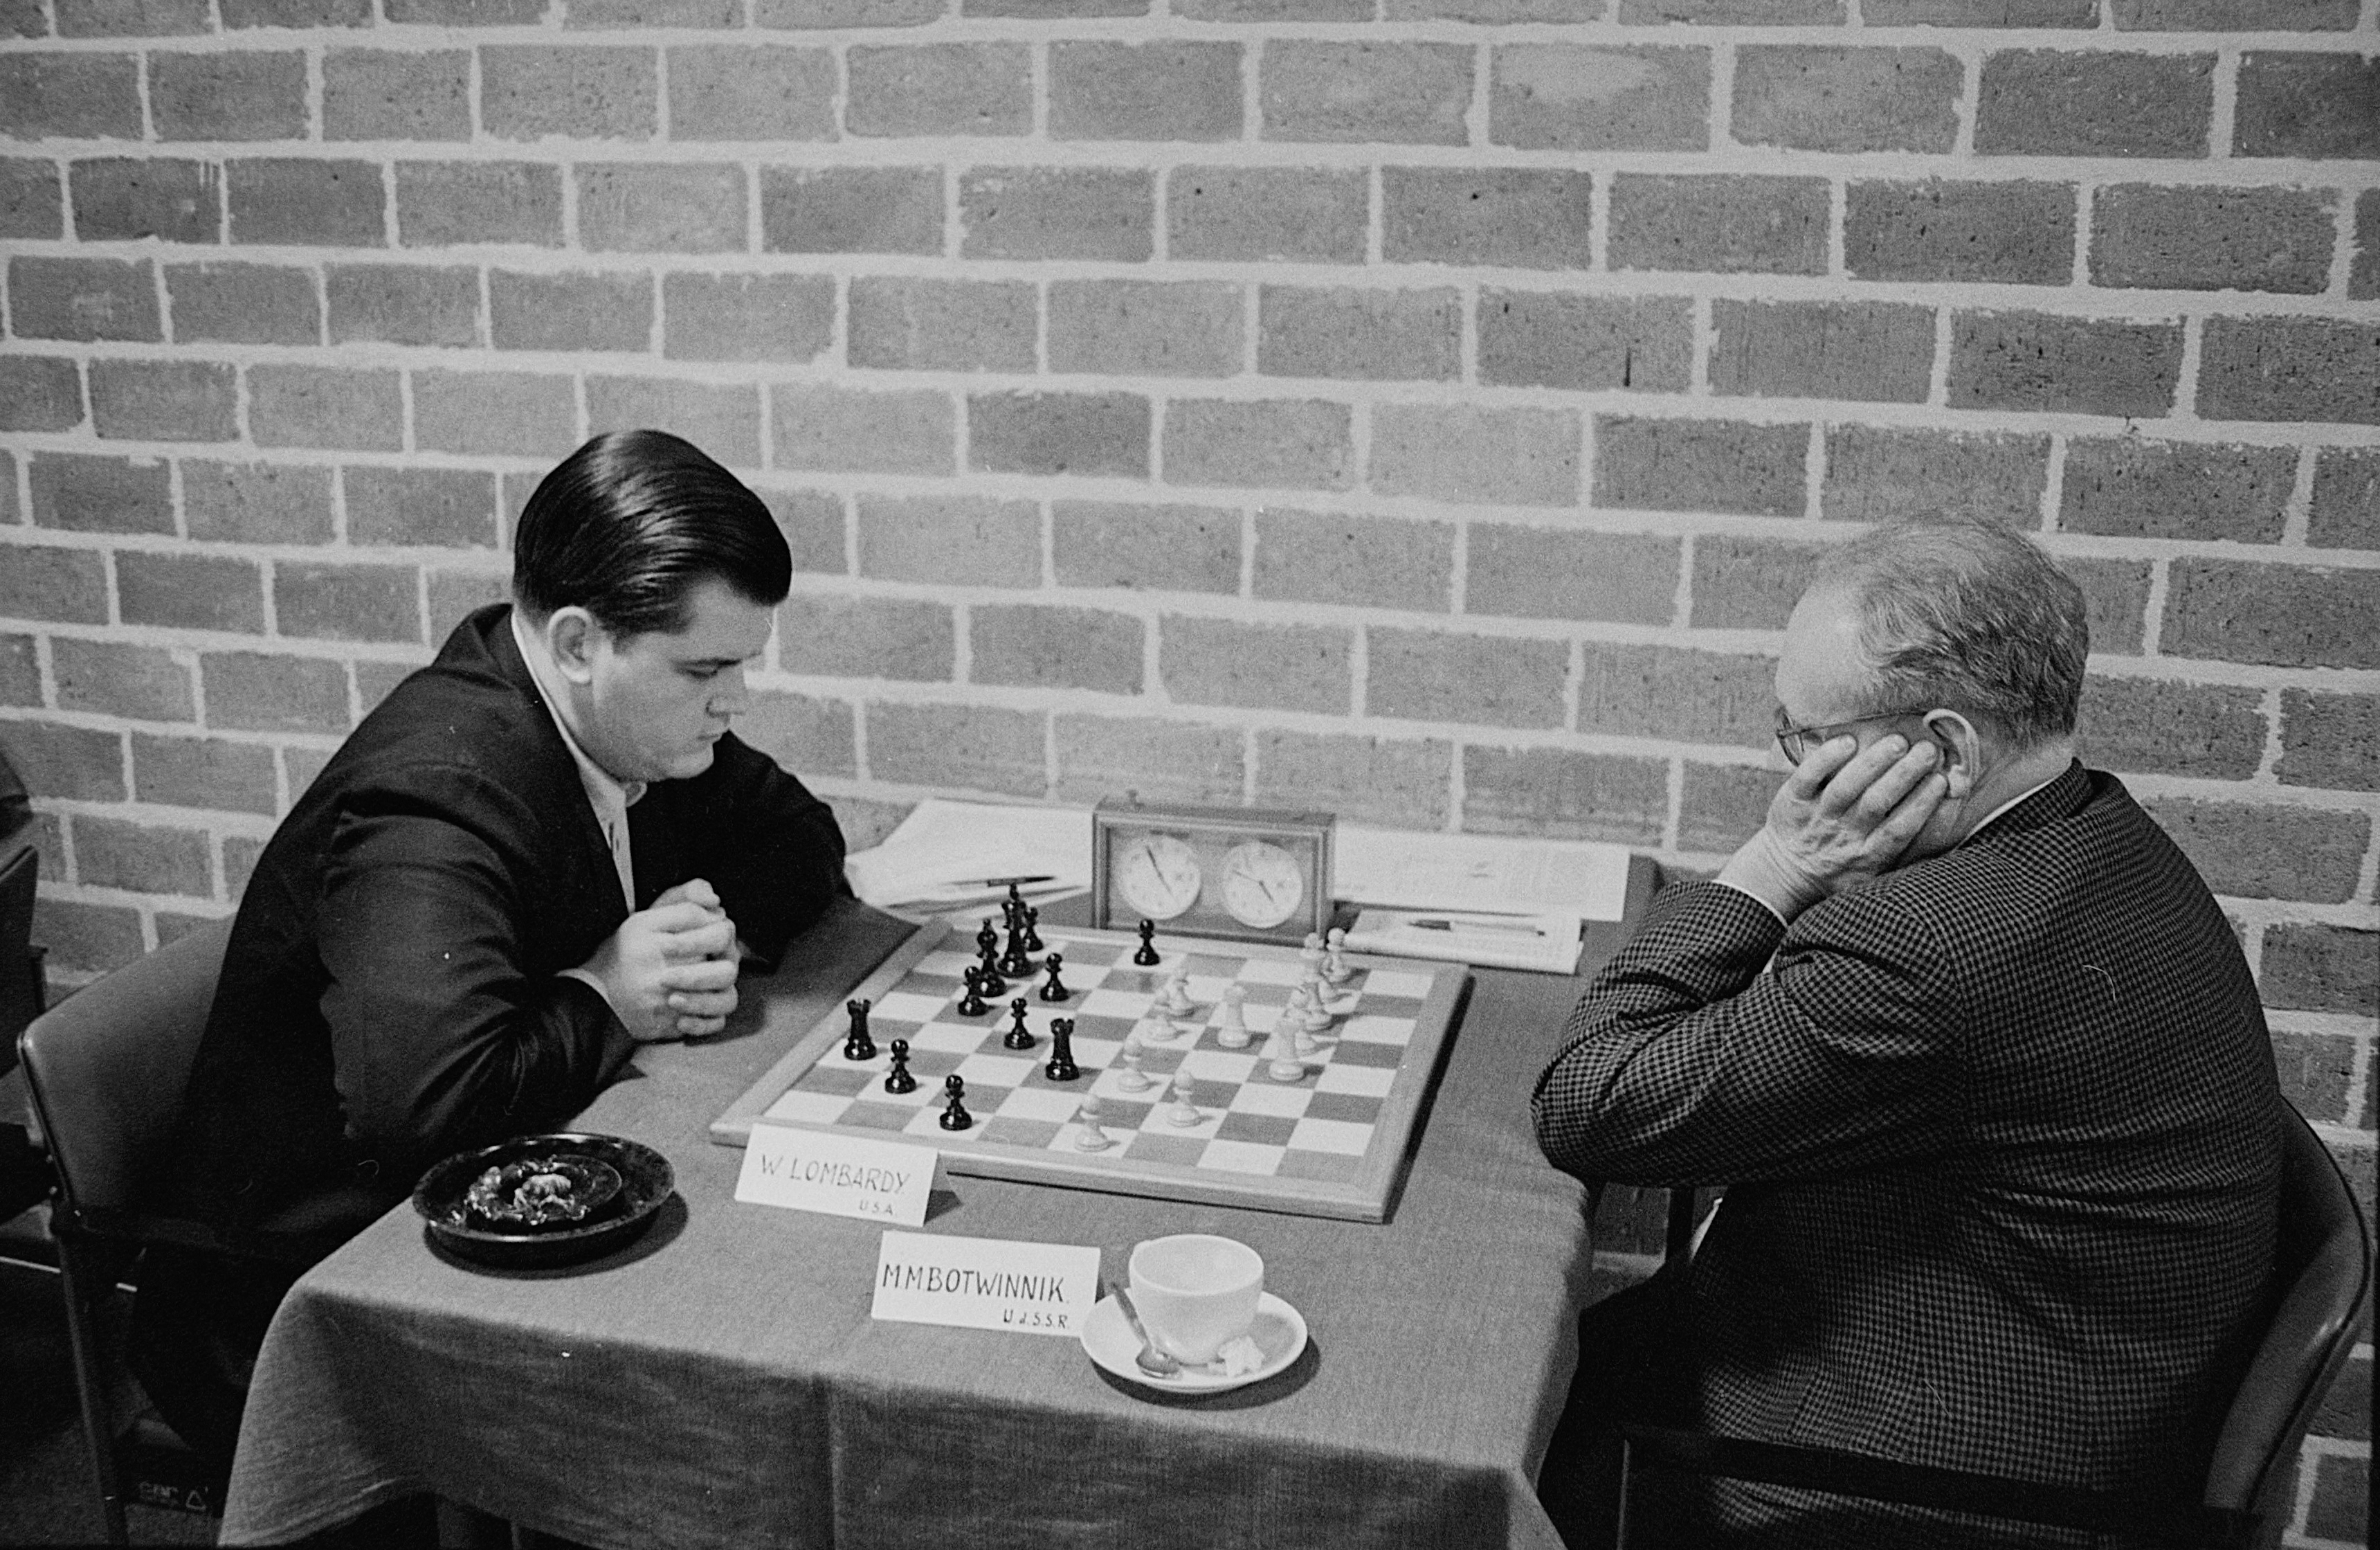 Botvinnik — chess genius and hard worker